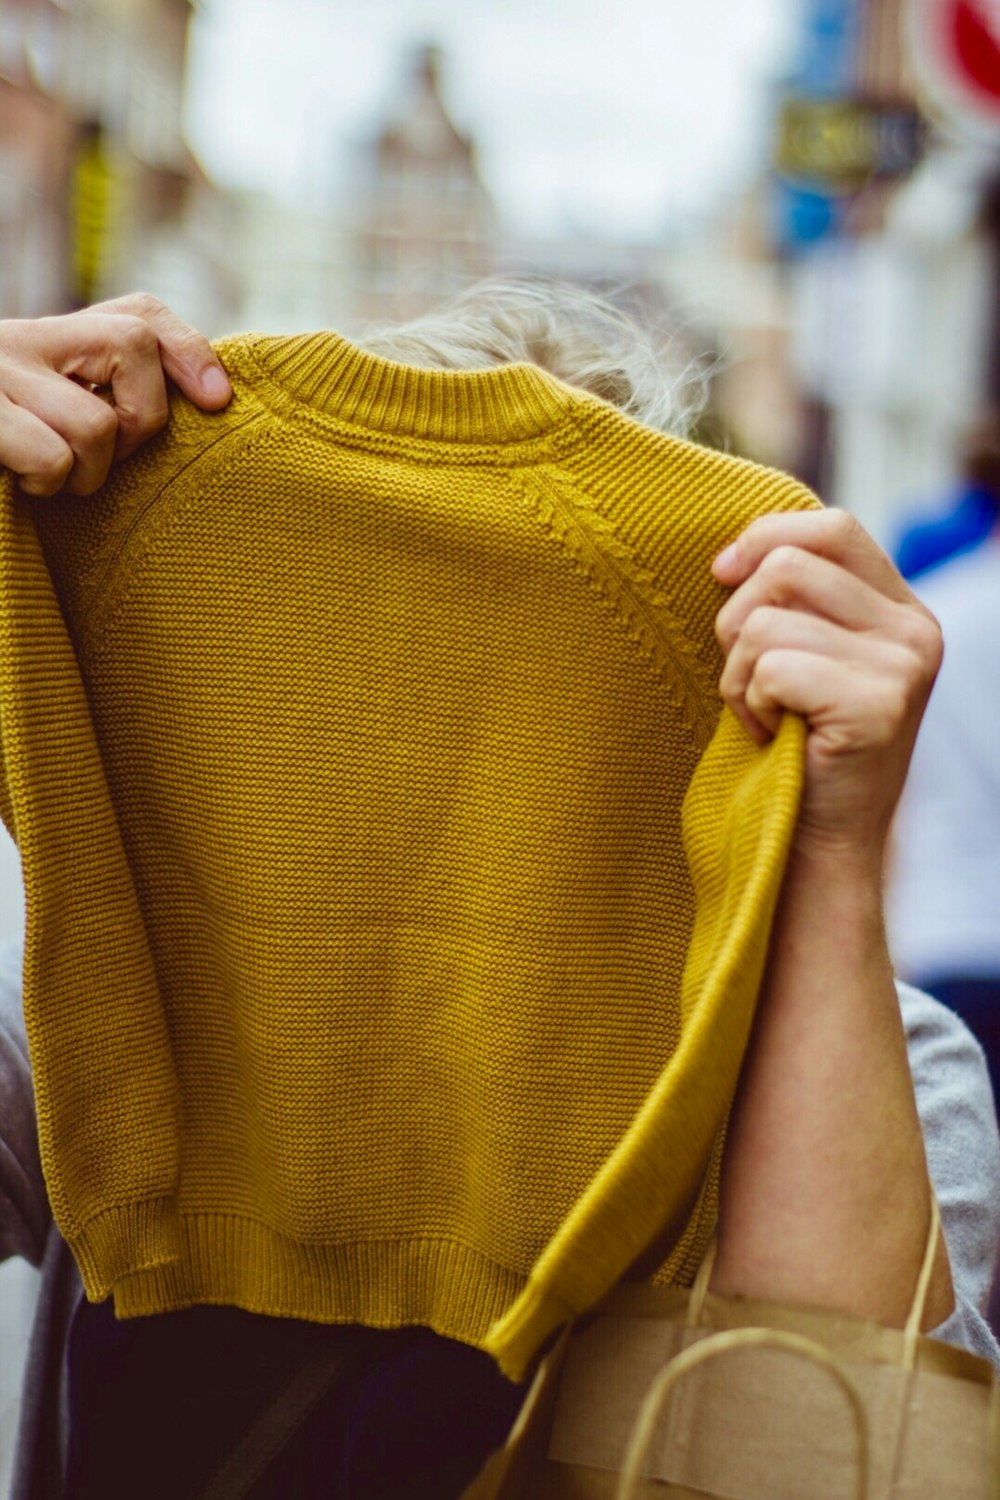 person holding sweatshirt photo – Free Clothing Image on Unsplash